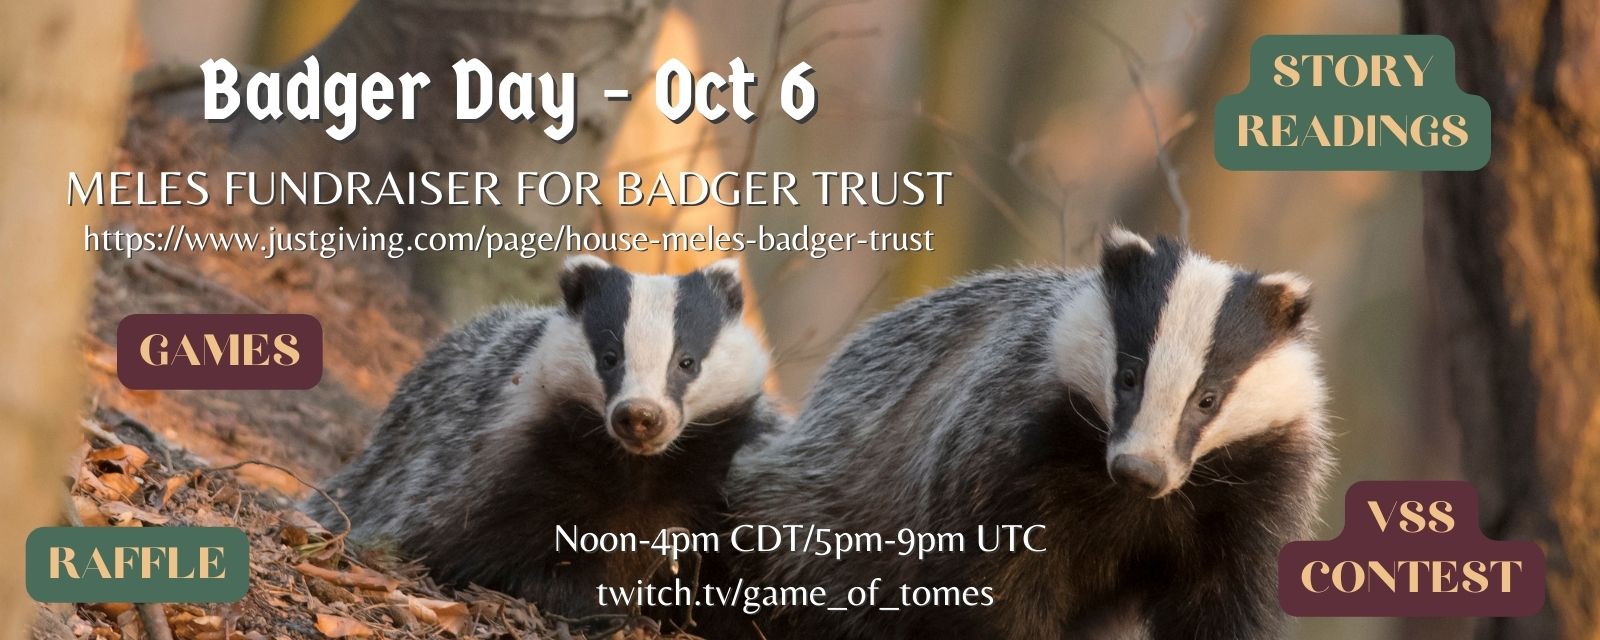 Badger Day - Meles fundraiser - header